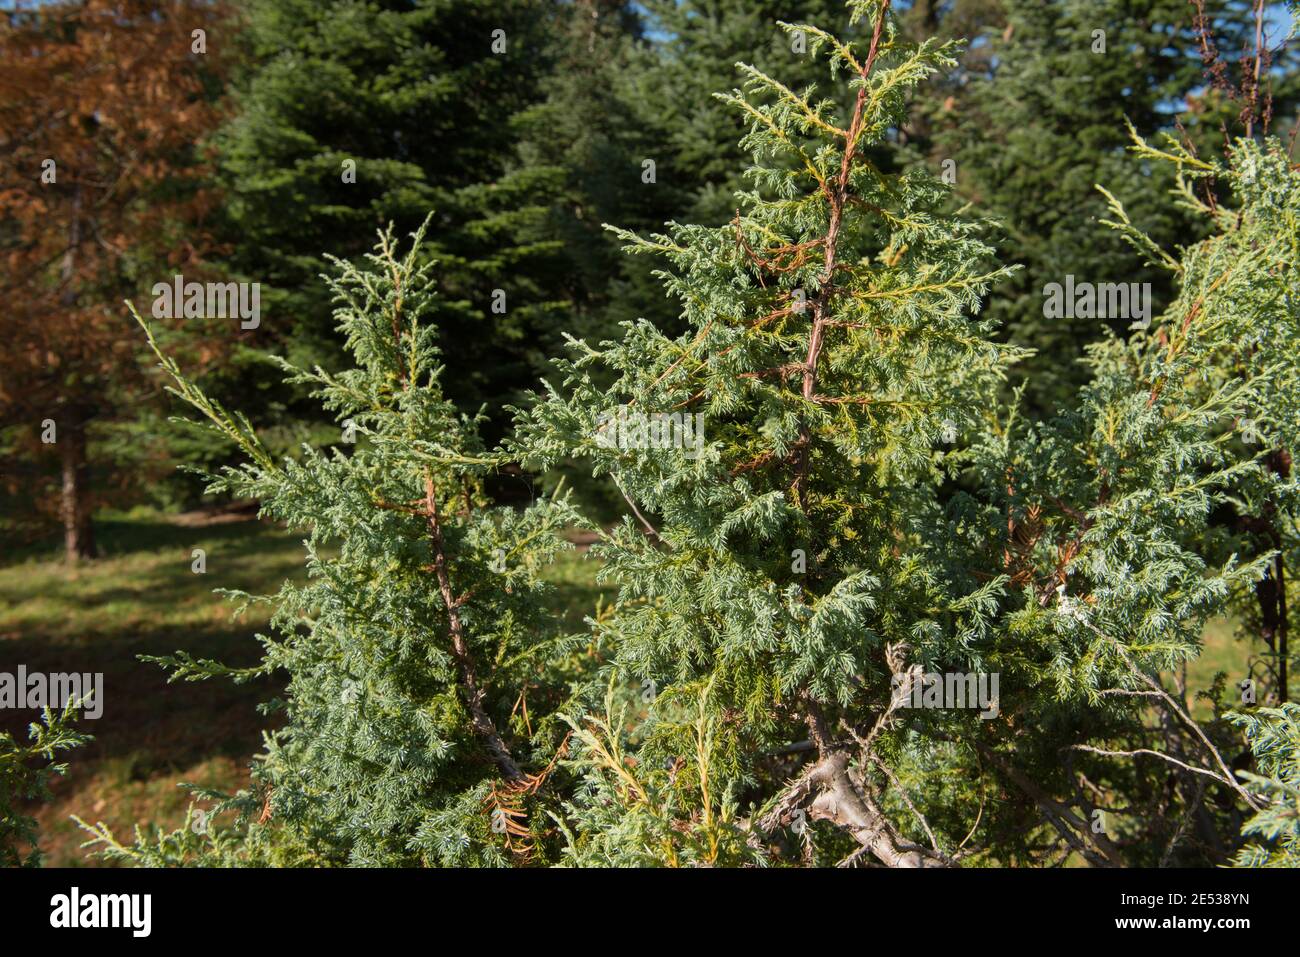 Le feuillage d'Evergreen d'un arbuste himalayen ou de genévrier (Juniperus squamata) qui pousse dans un jardin des bois dans le West Sussex rural, Angleterre, Royaume-Uni Banque D'Images